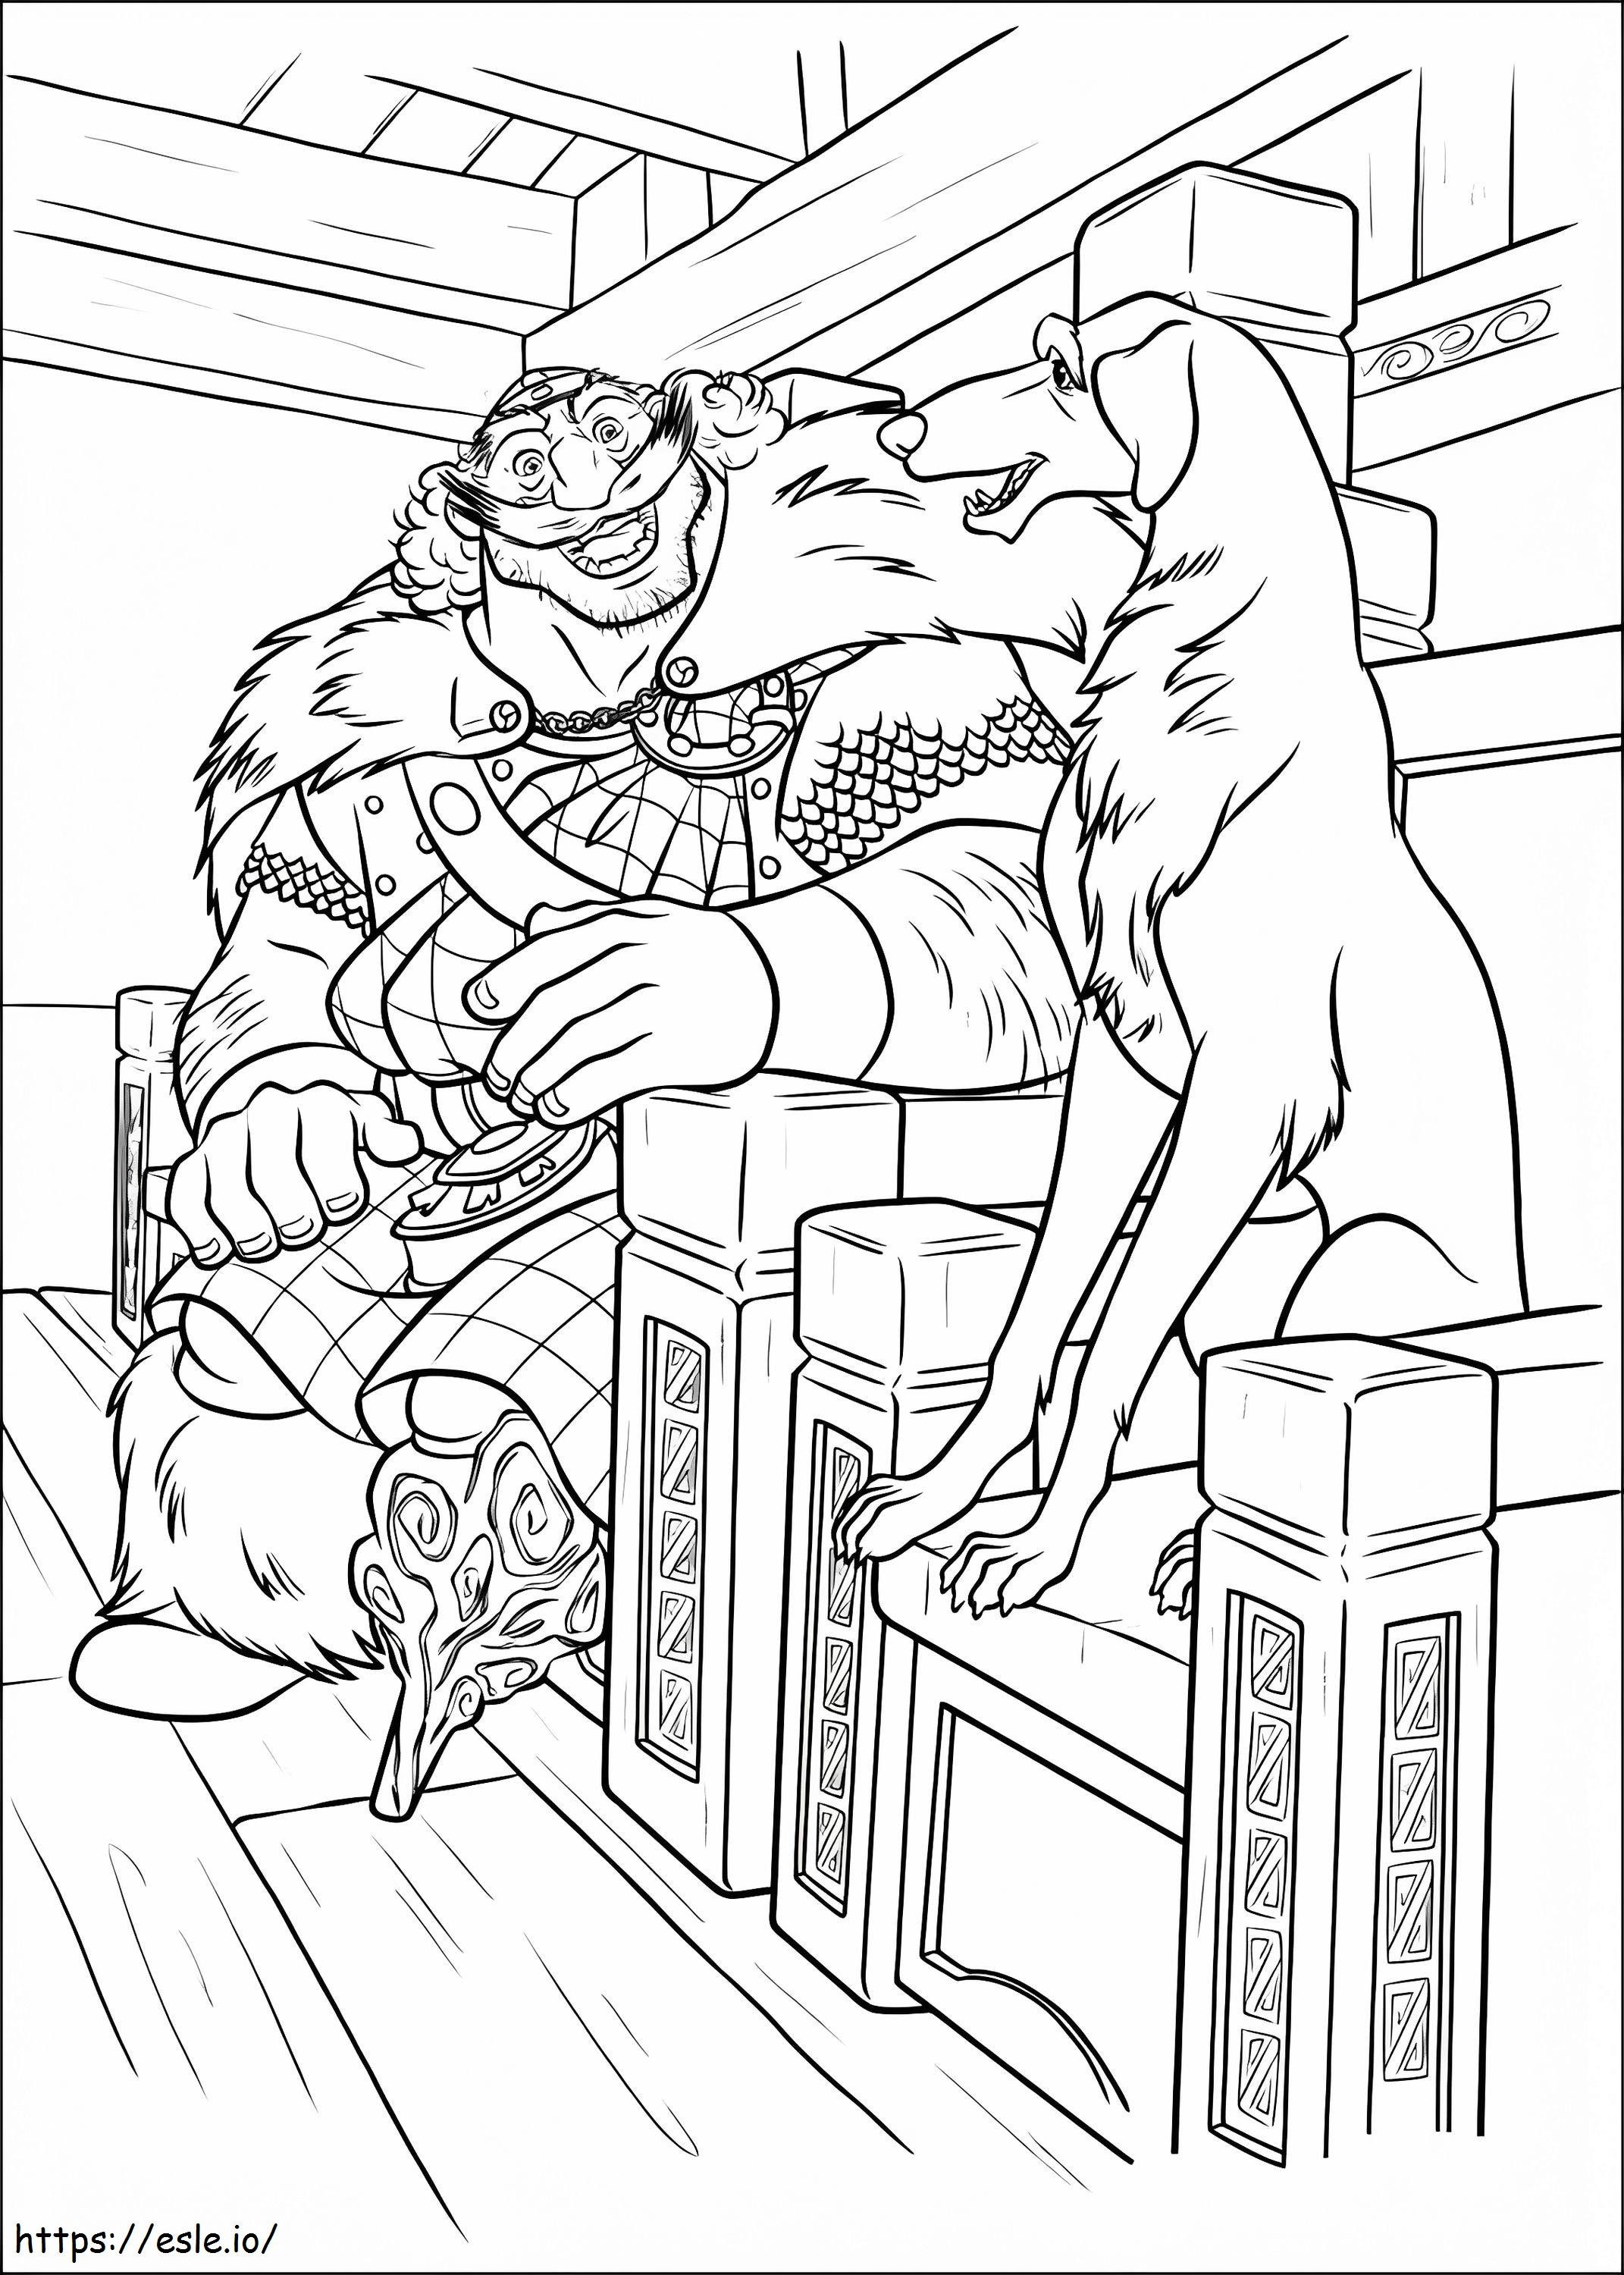 Re Fergus e il cane seduto da colorare